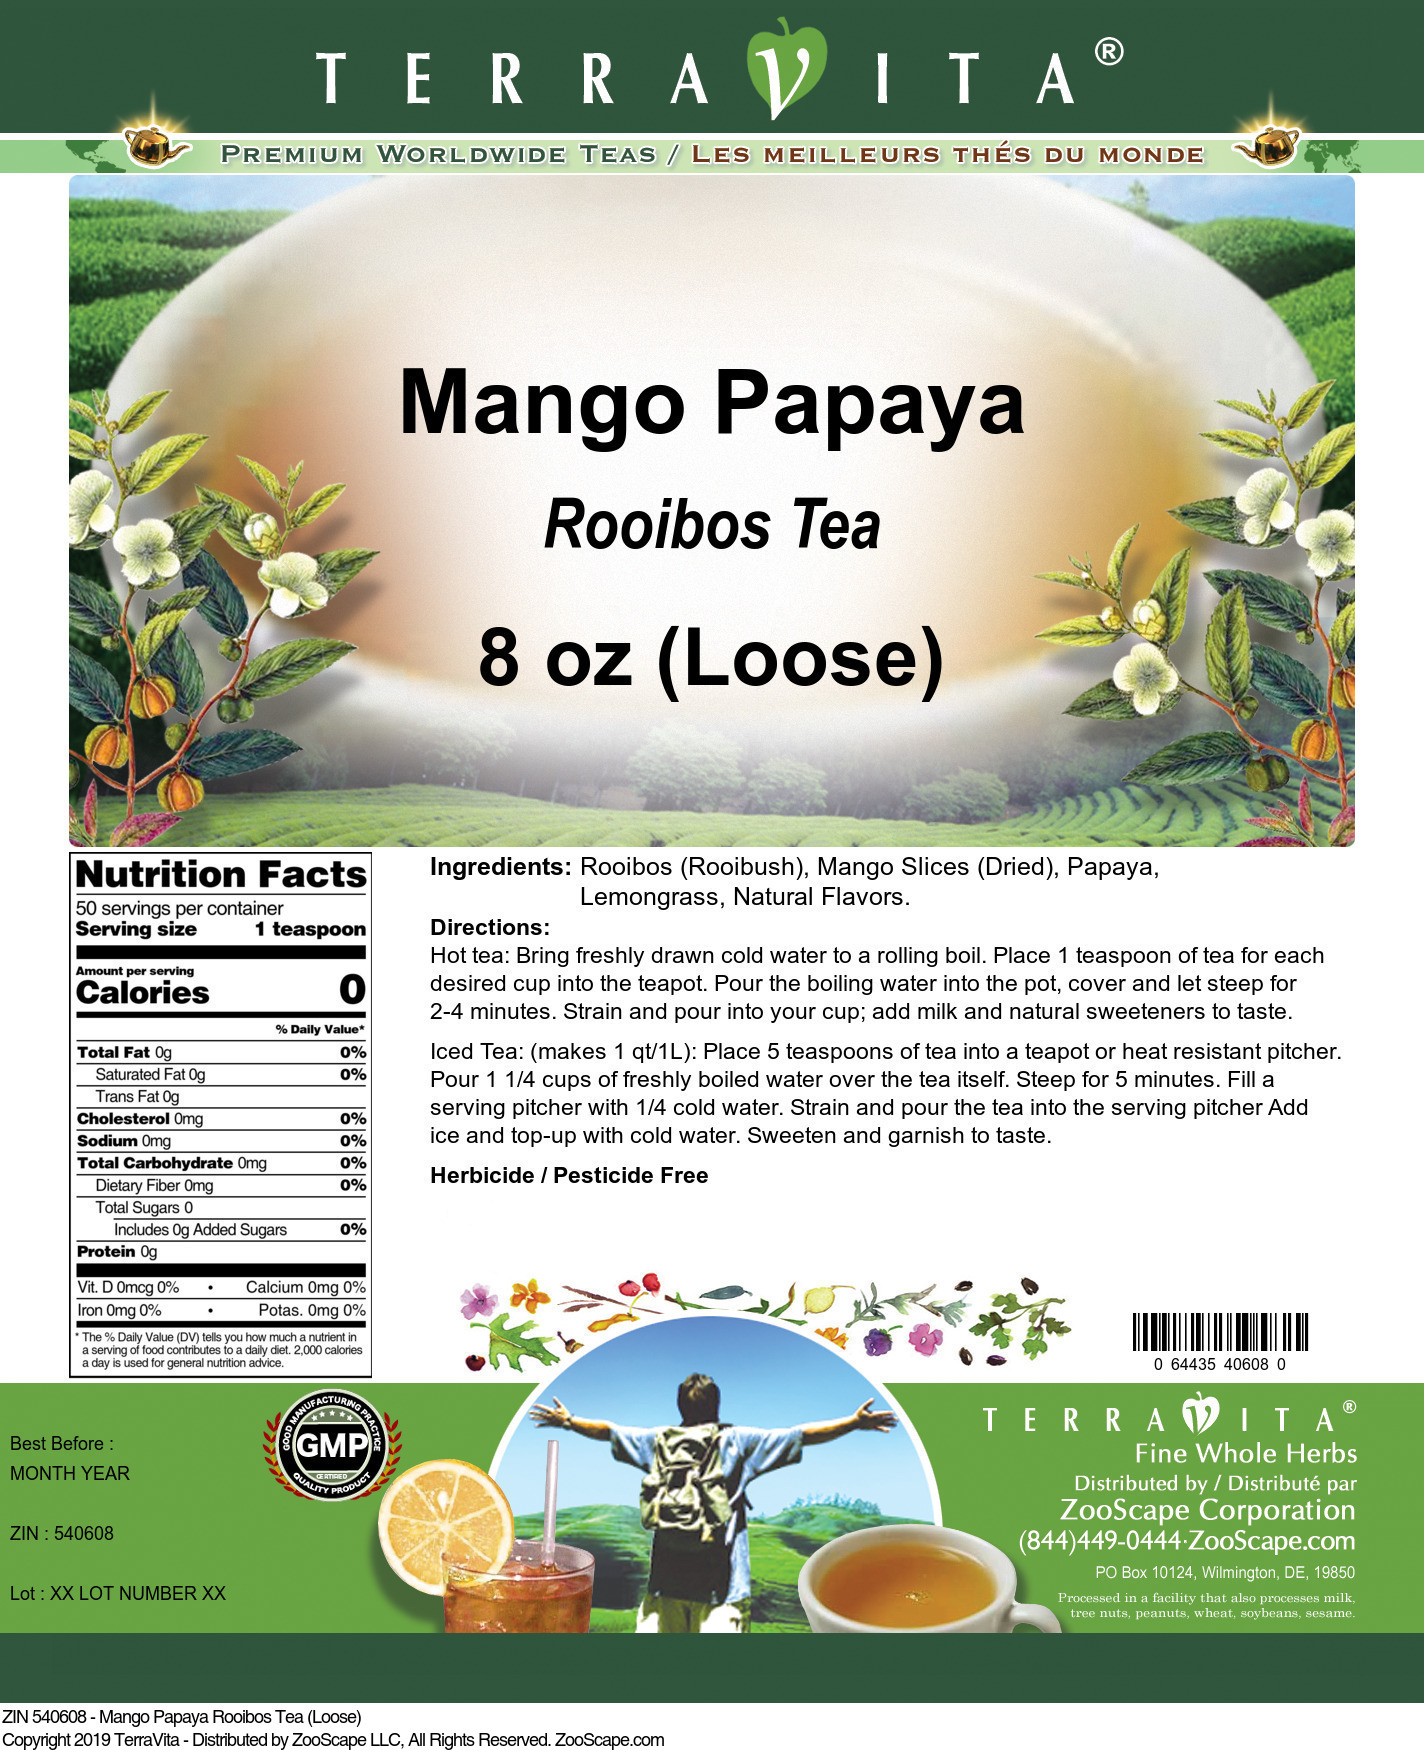 Mango Papaya Rooibos Tea (Loose) - Label